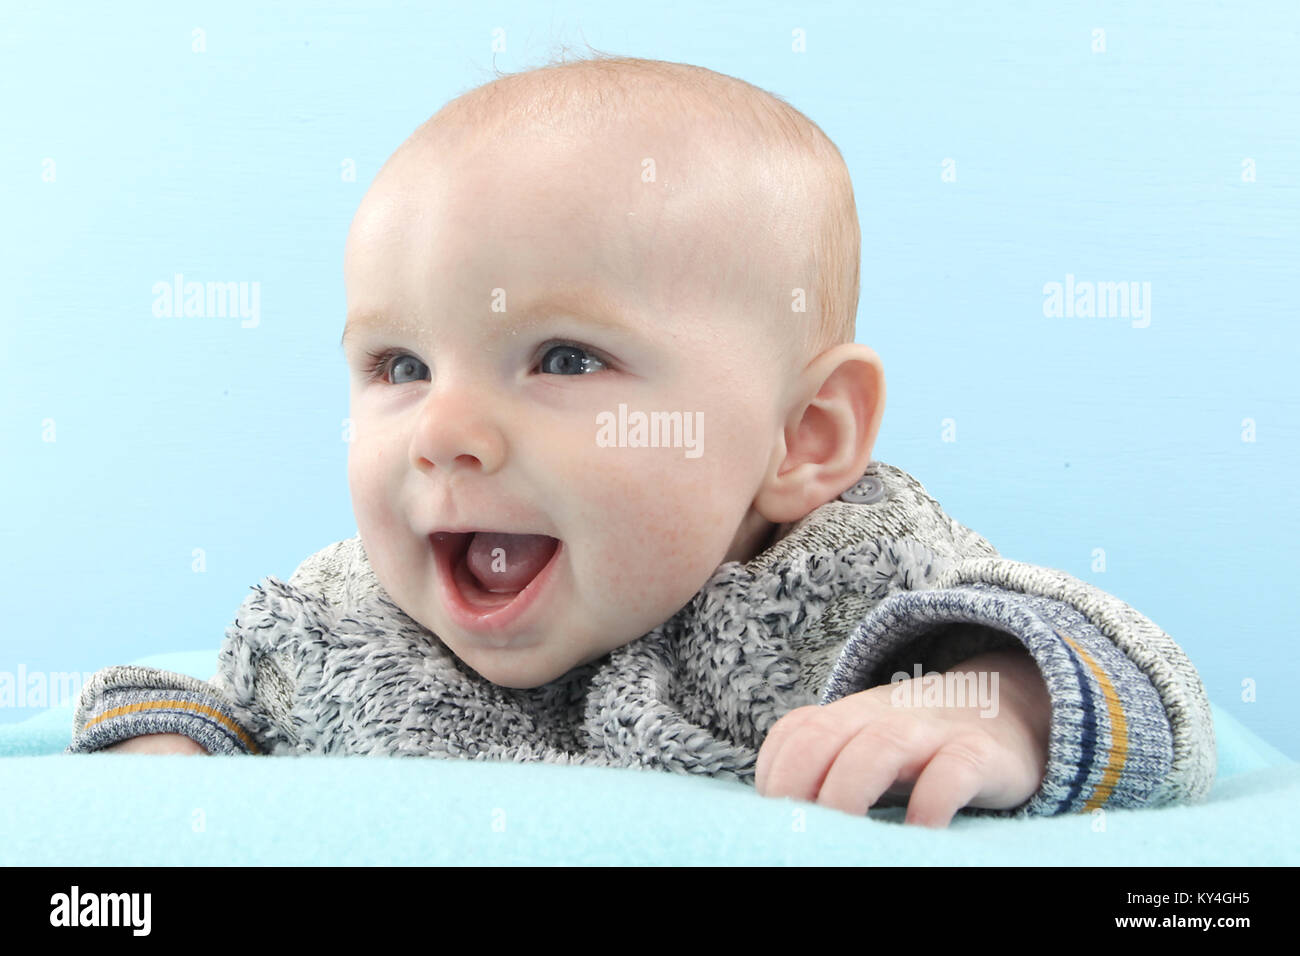 5 mois bébé garçon heureux de jouer sur un tapis de jeux, le développement de l'enfant Banque D'Images